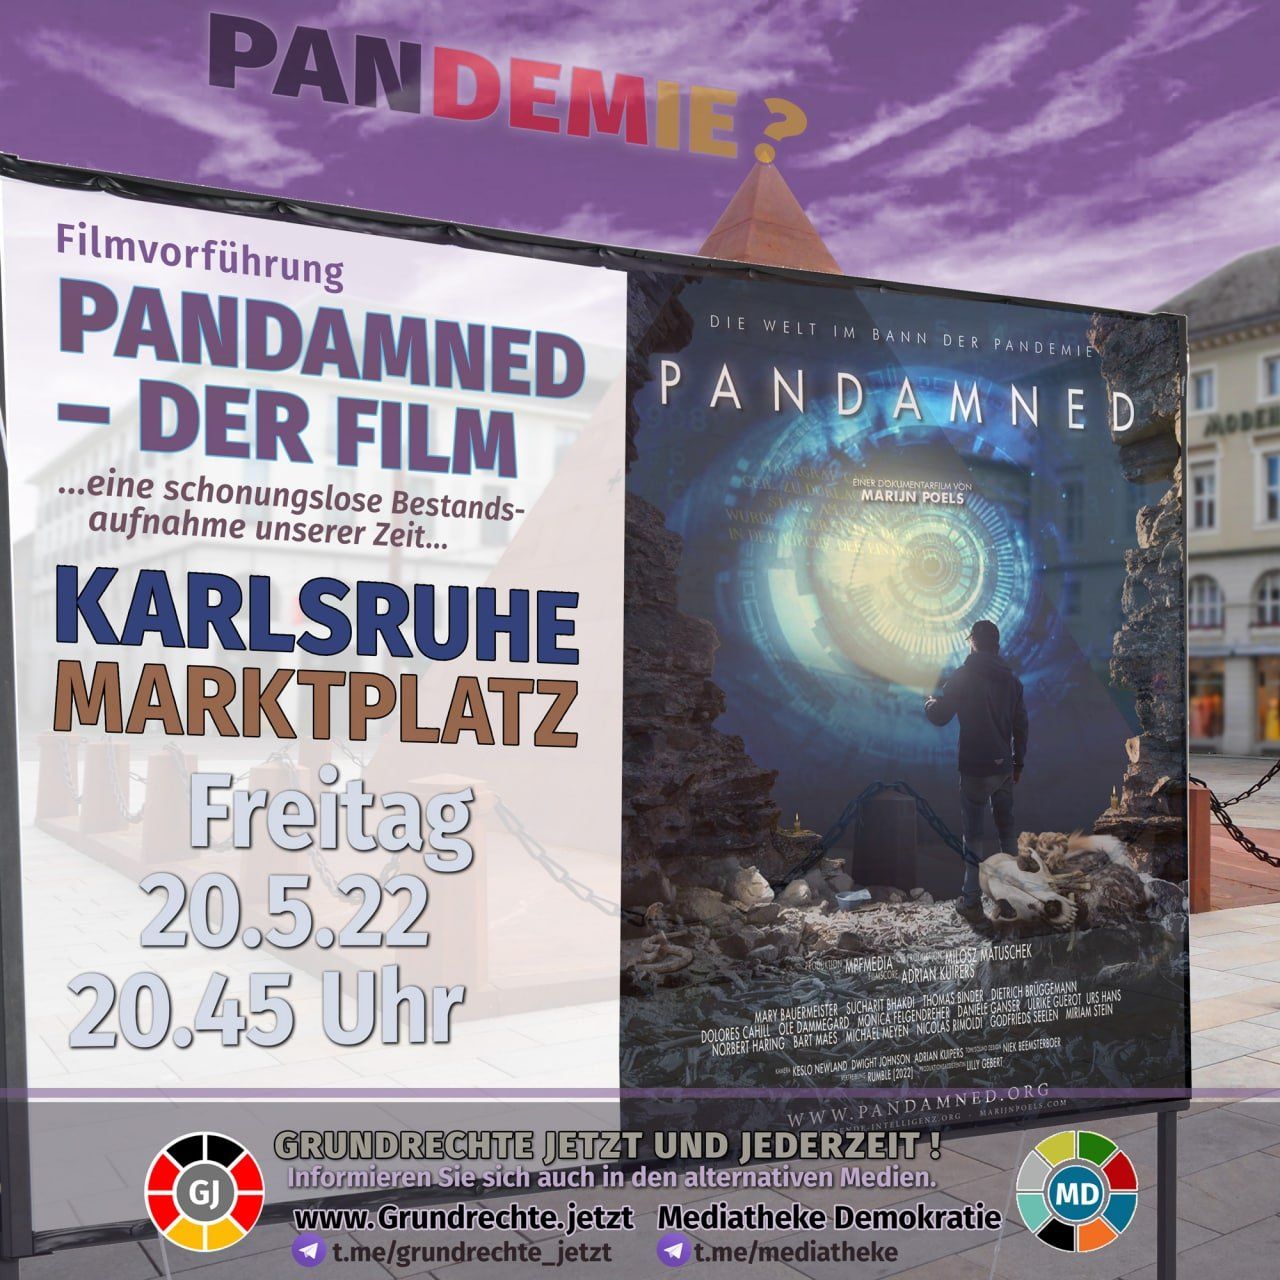 PANDAMNED - der Film - Filmaufführung - Karlsruhe Marktplatz 20.05.2022 20:45 Uhr